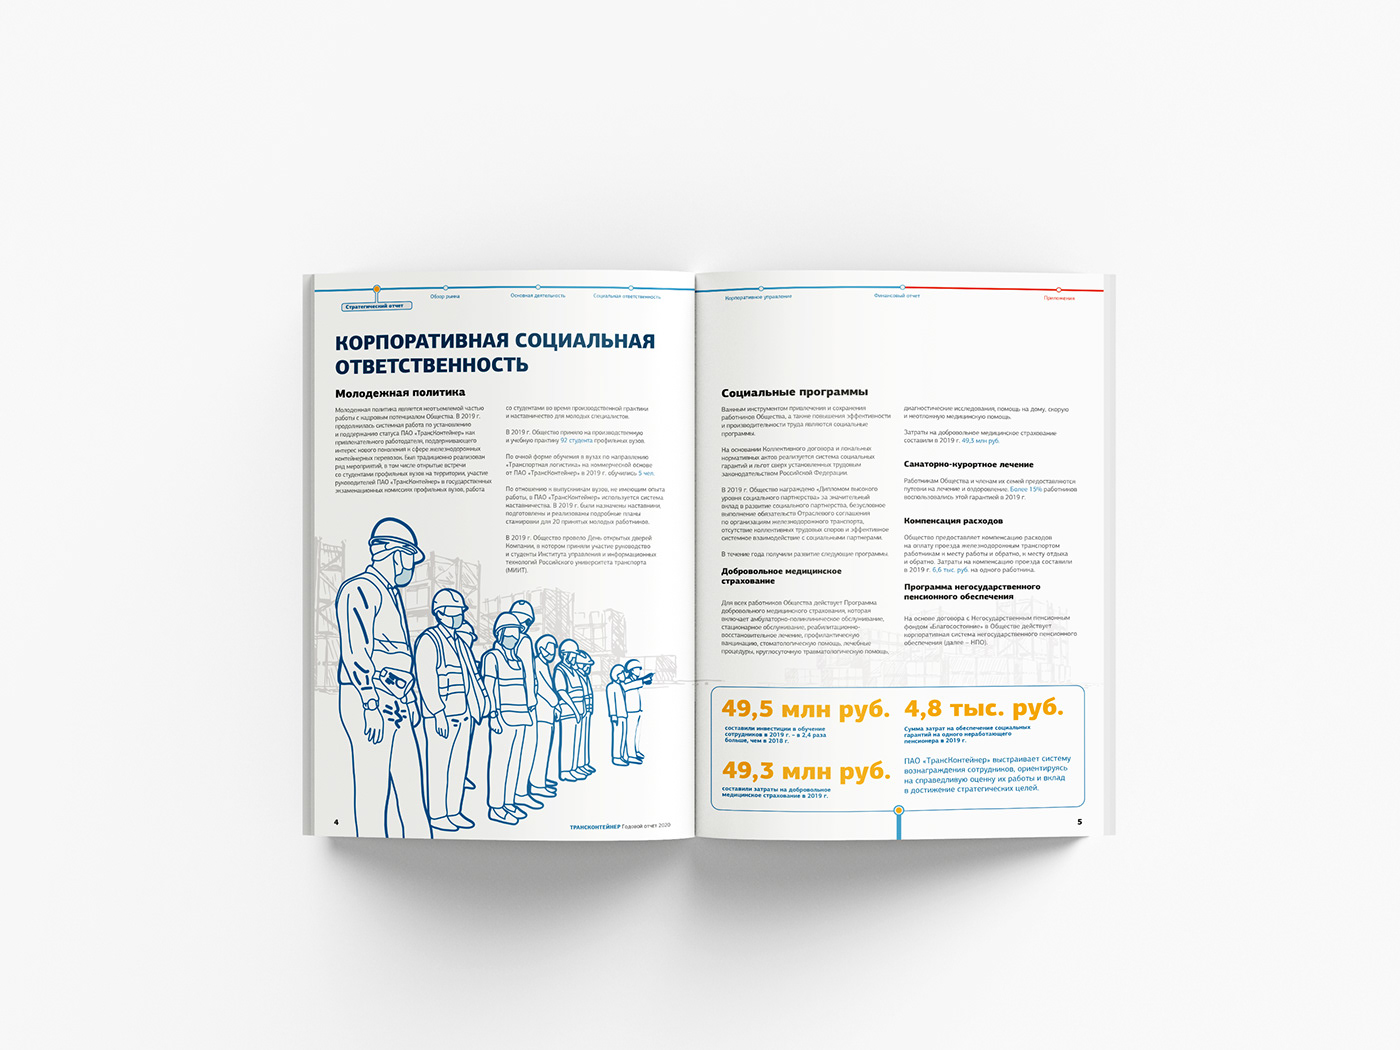 anual report design верстка годовой отчет графический дизайн дизайн иллюстрация инфографика рисунок